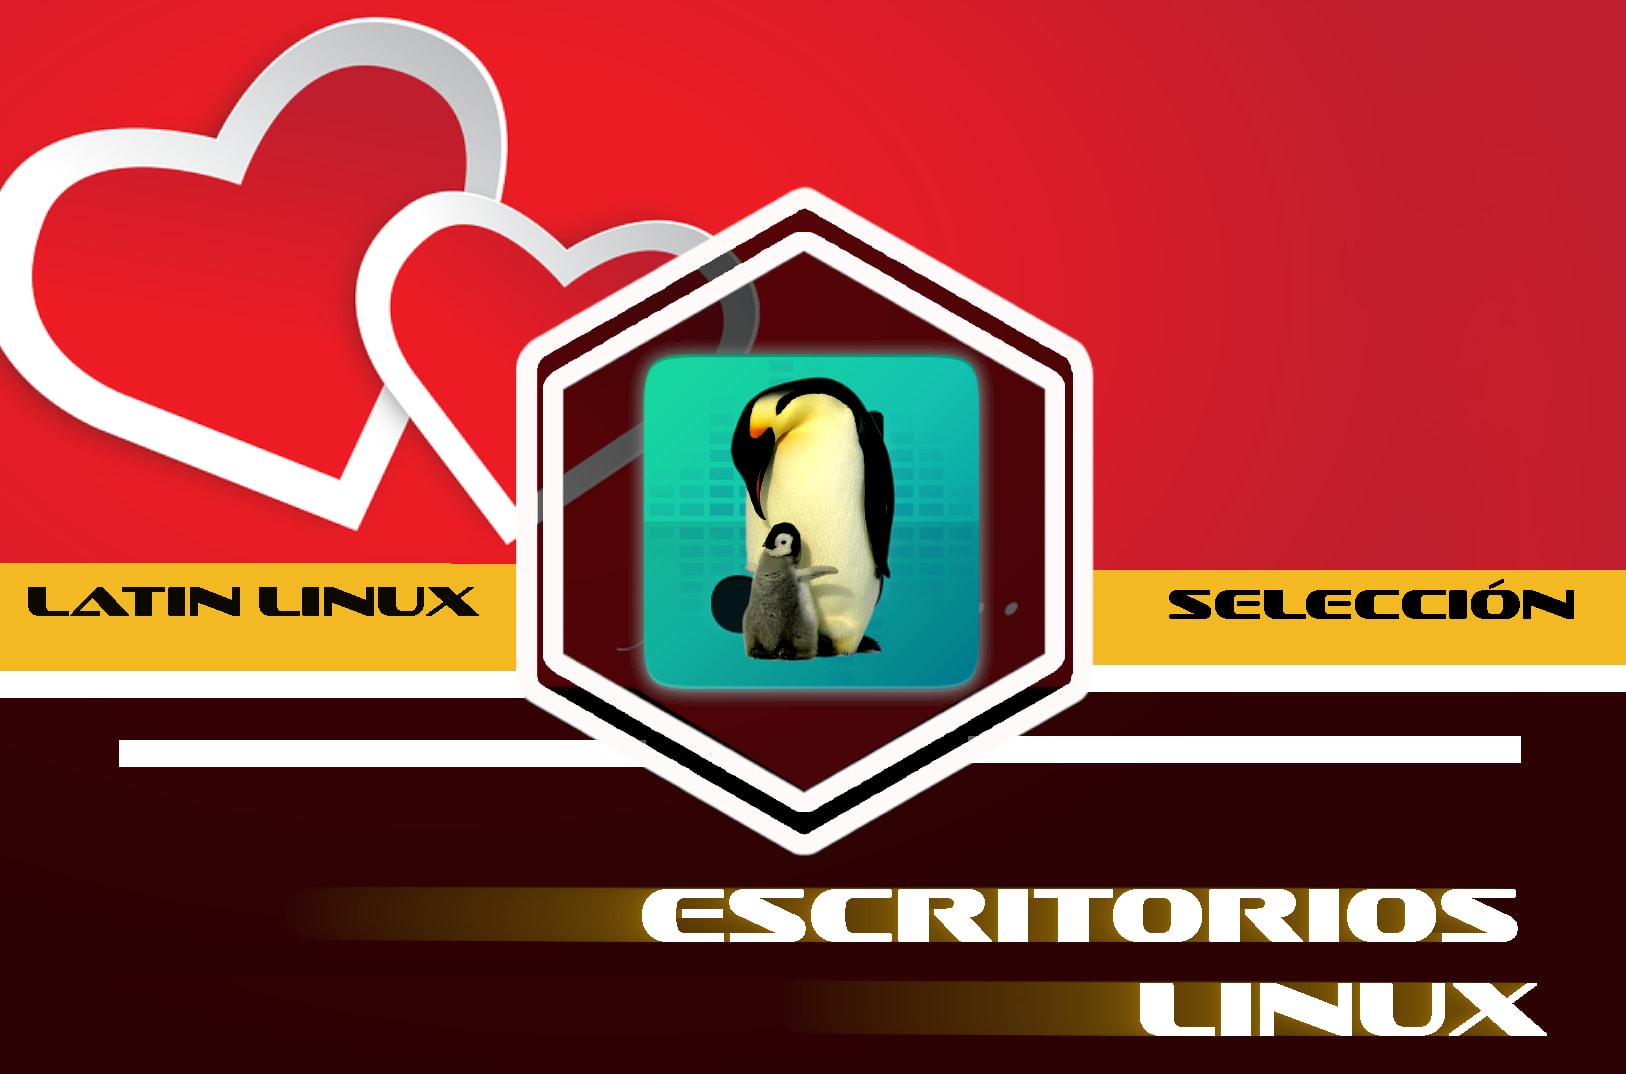 La belleza del escritorio Linux - Latin Linux